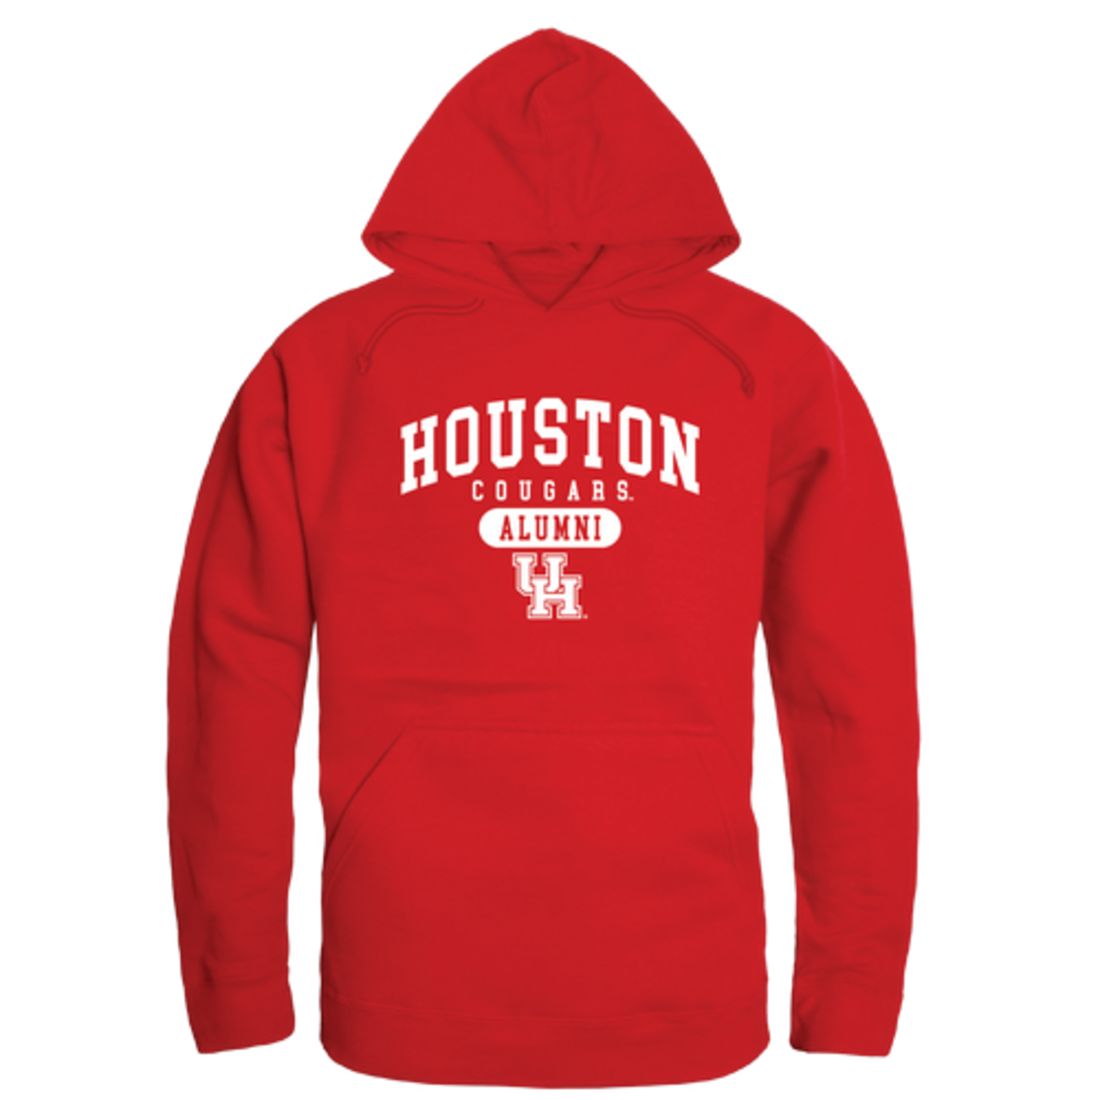 UH University of Houston Cougars Alumni Fleece Hoodie Sweatshirts Heather Grey-Campus-Wardrobe